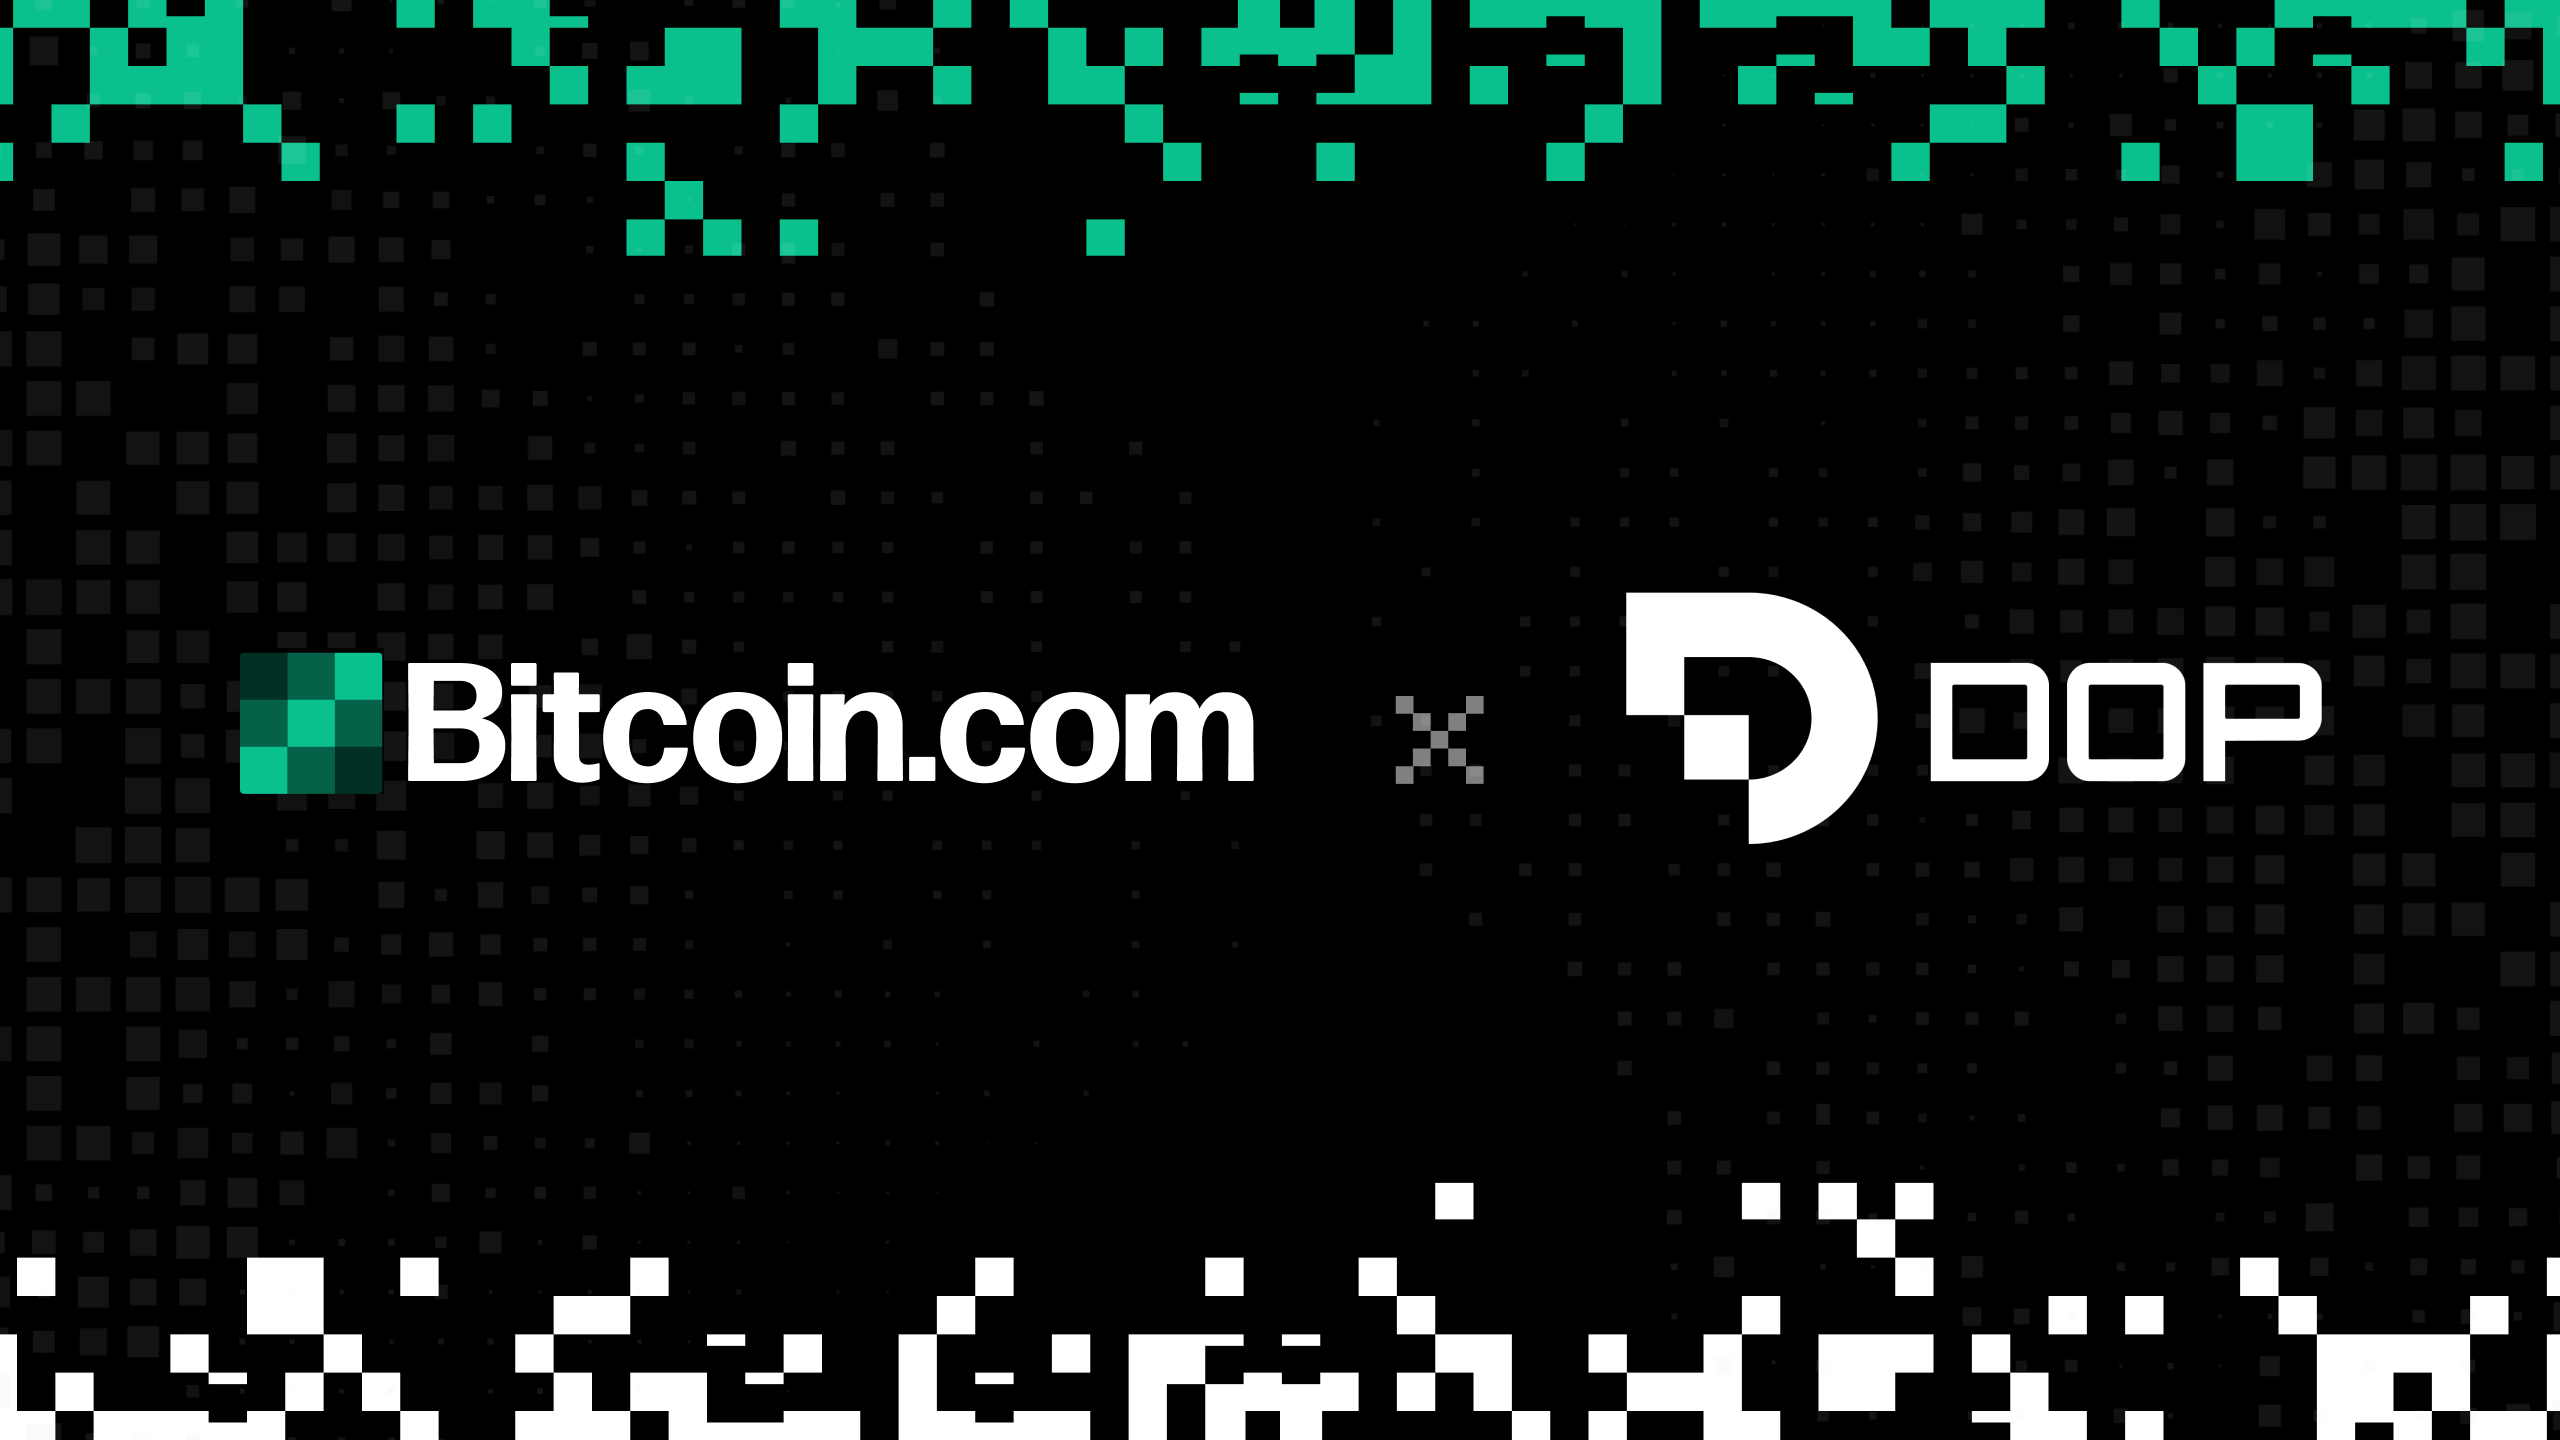 پروتکل مالکیت داده (DOP) با Bitcoin.com شریک می شود تا پیشگام حاکمیت داده در کریپتو باشد.